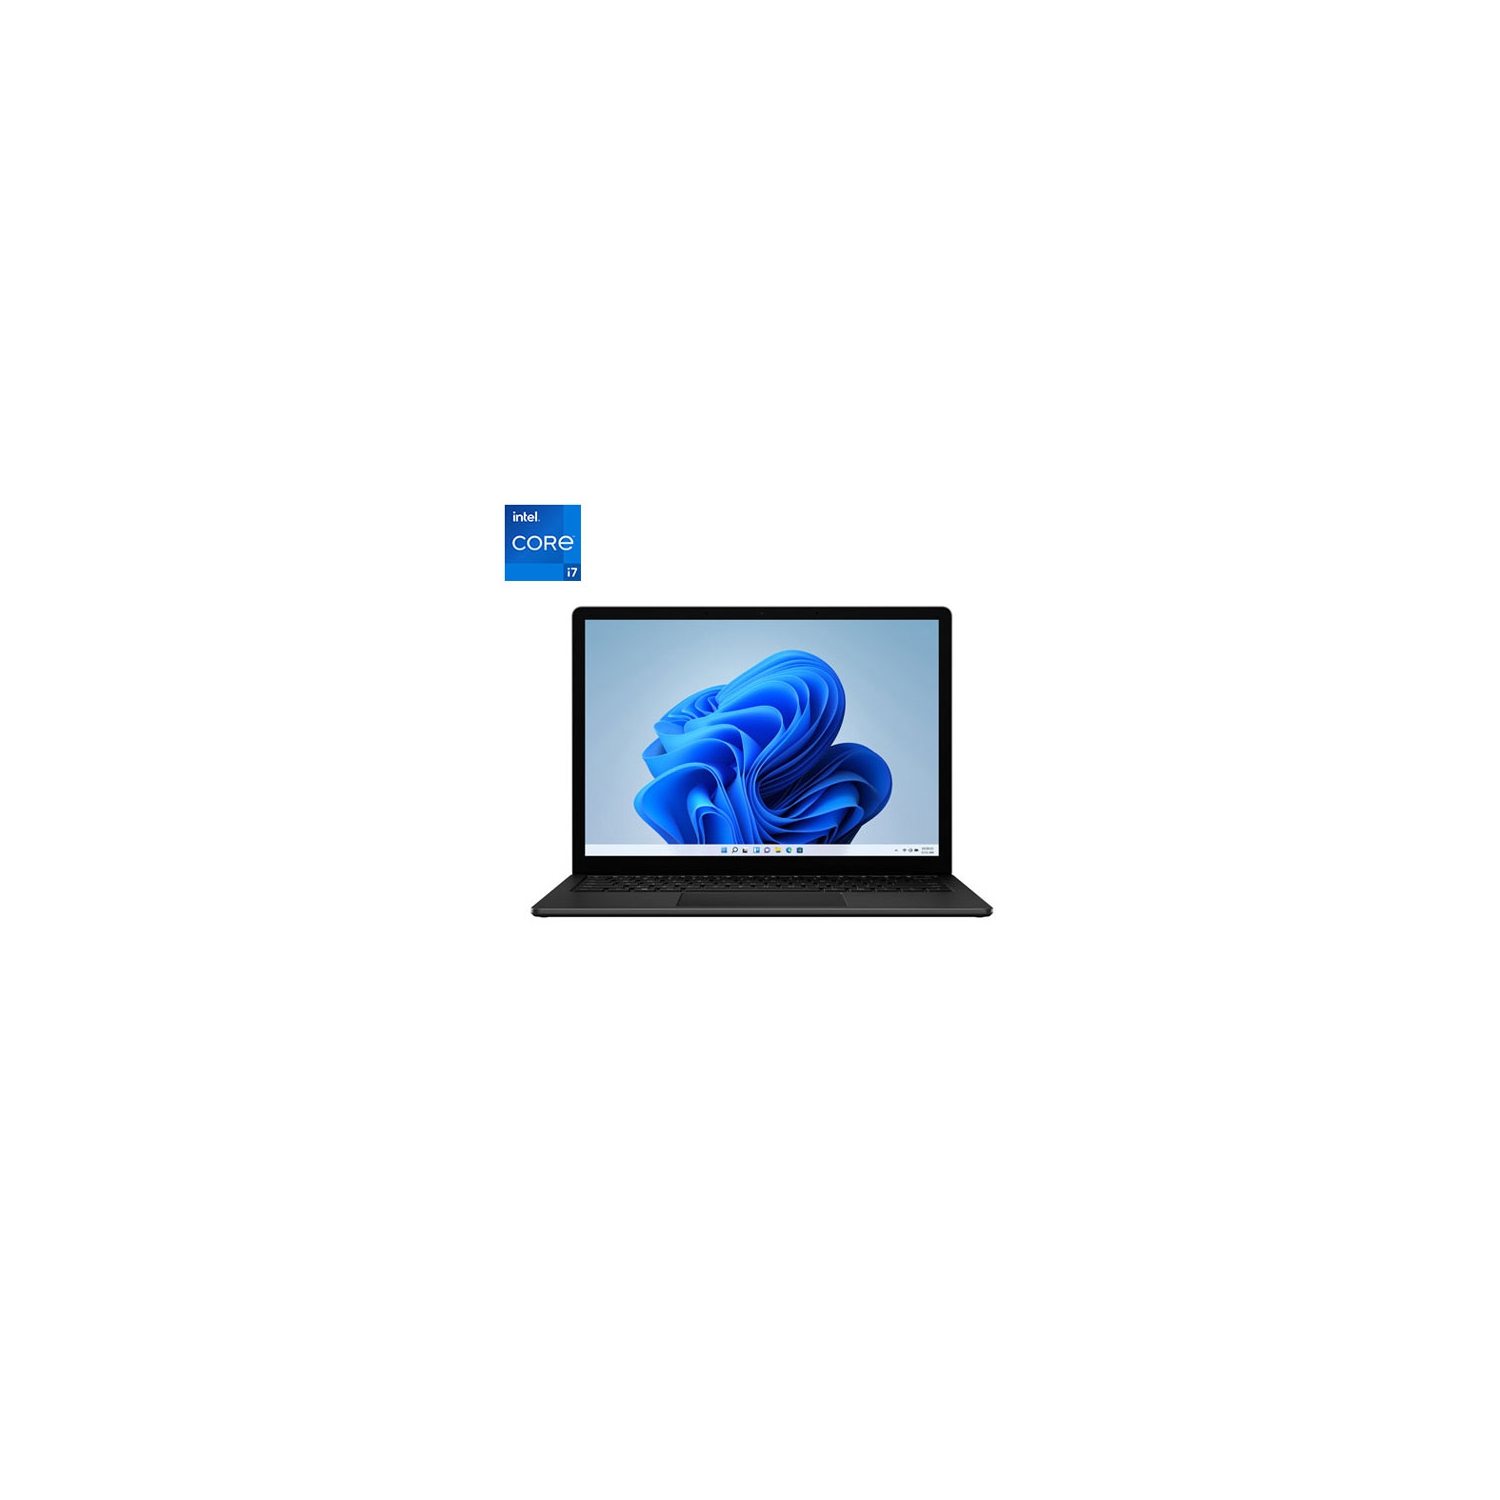 Microsoft Surface Laptop 4 Touchscreen 13.5" - Matte Black (Intel Core i7-1185G7/1TB SSD/32GB RAM) - Eng - Open Box